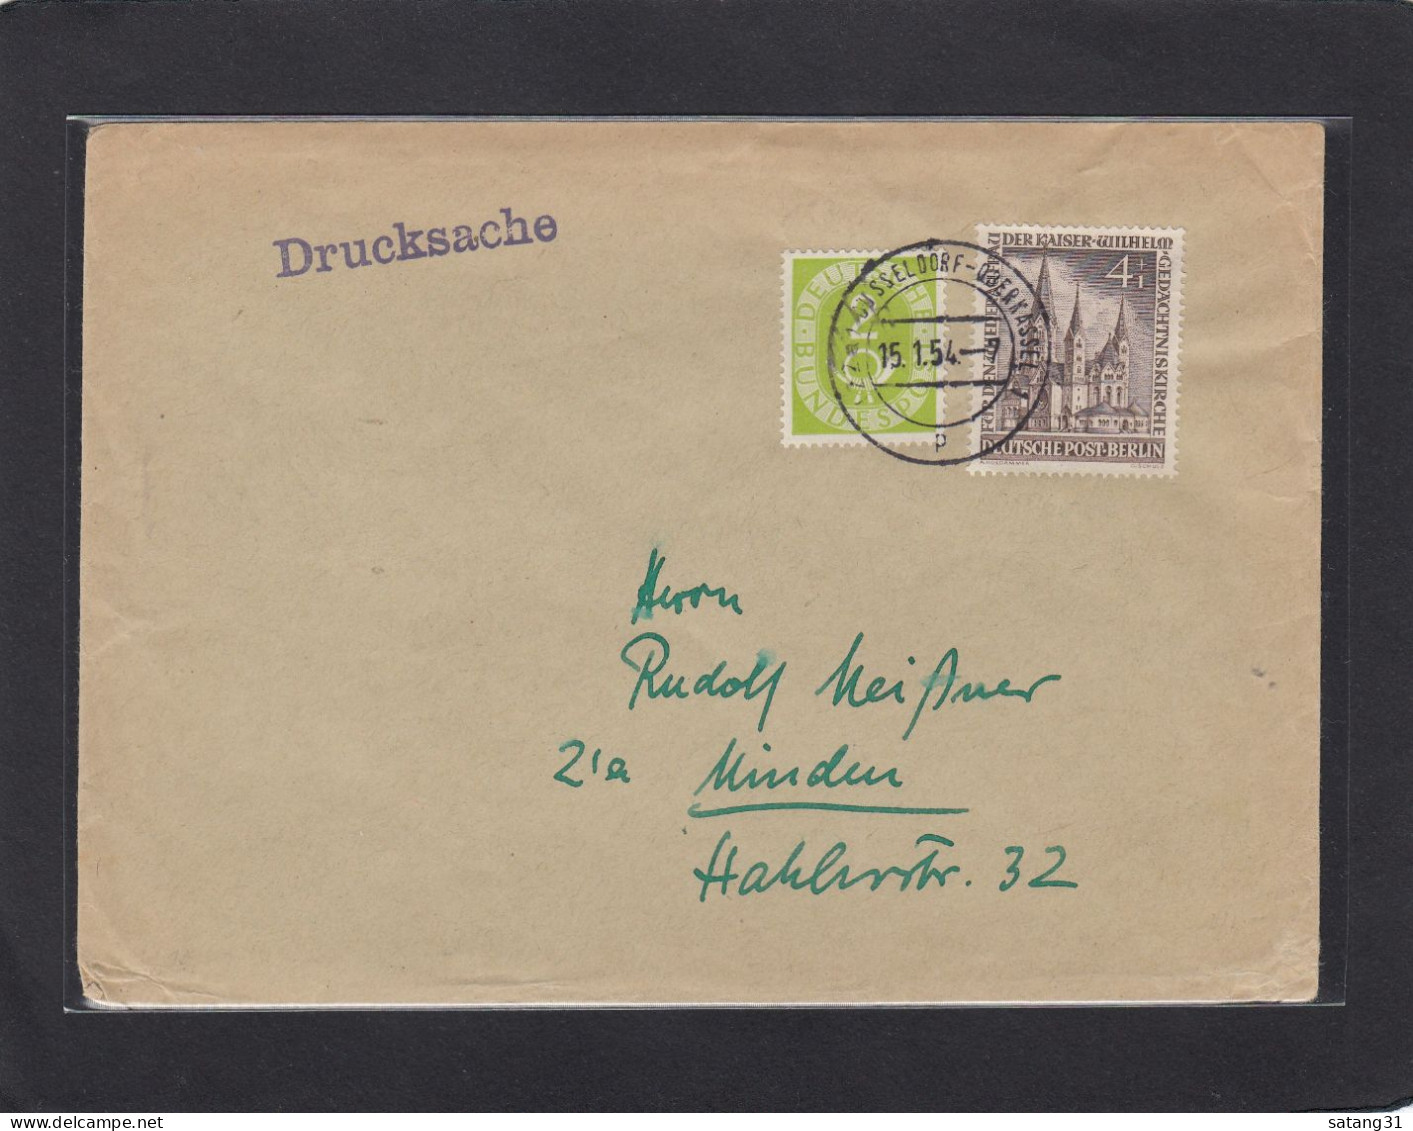 DRUCKSACHE AUS DÜSSELDORF - OBERKASSEL NACH MINDEN,1954. - Briefe U. Dokumente